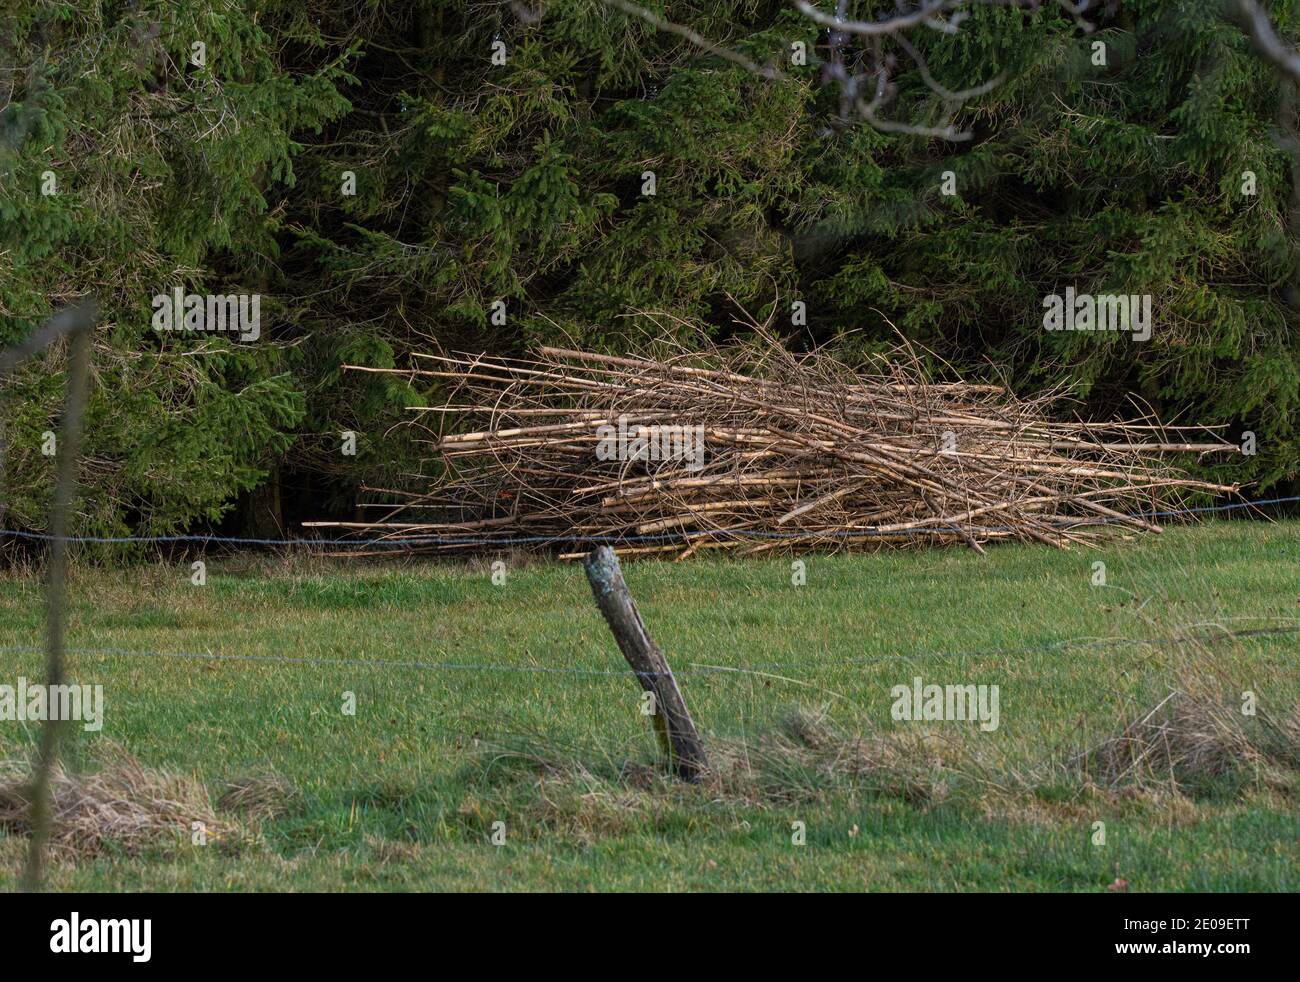 Des bois de sapin coupés dans un pré Stockfoto